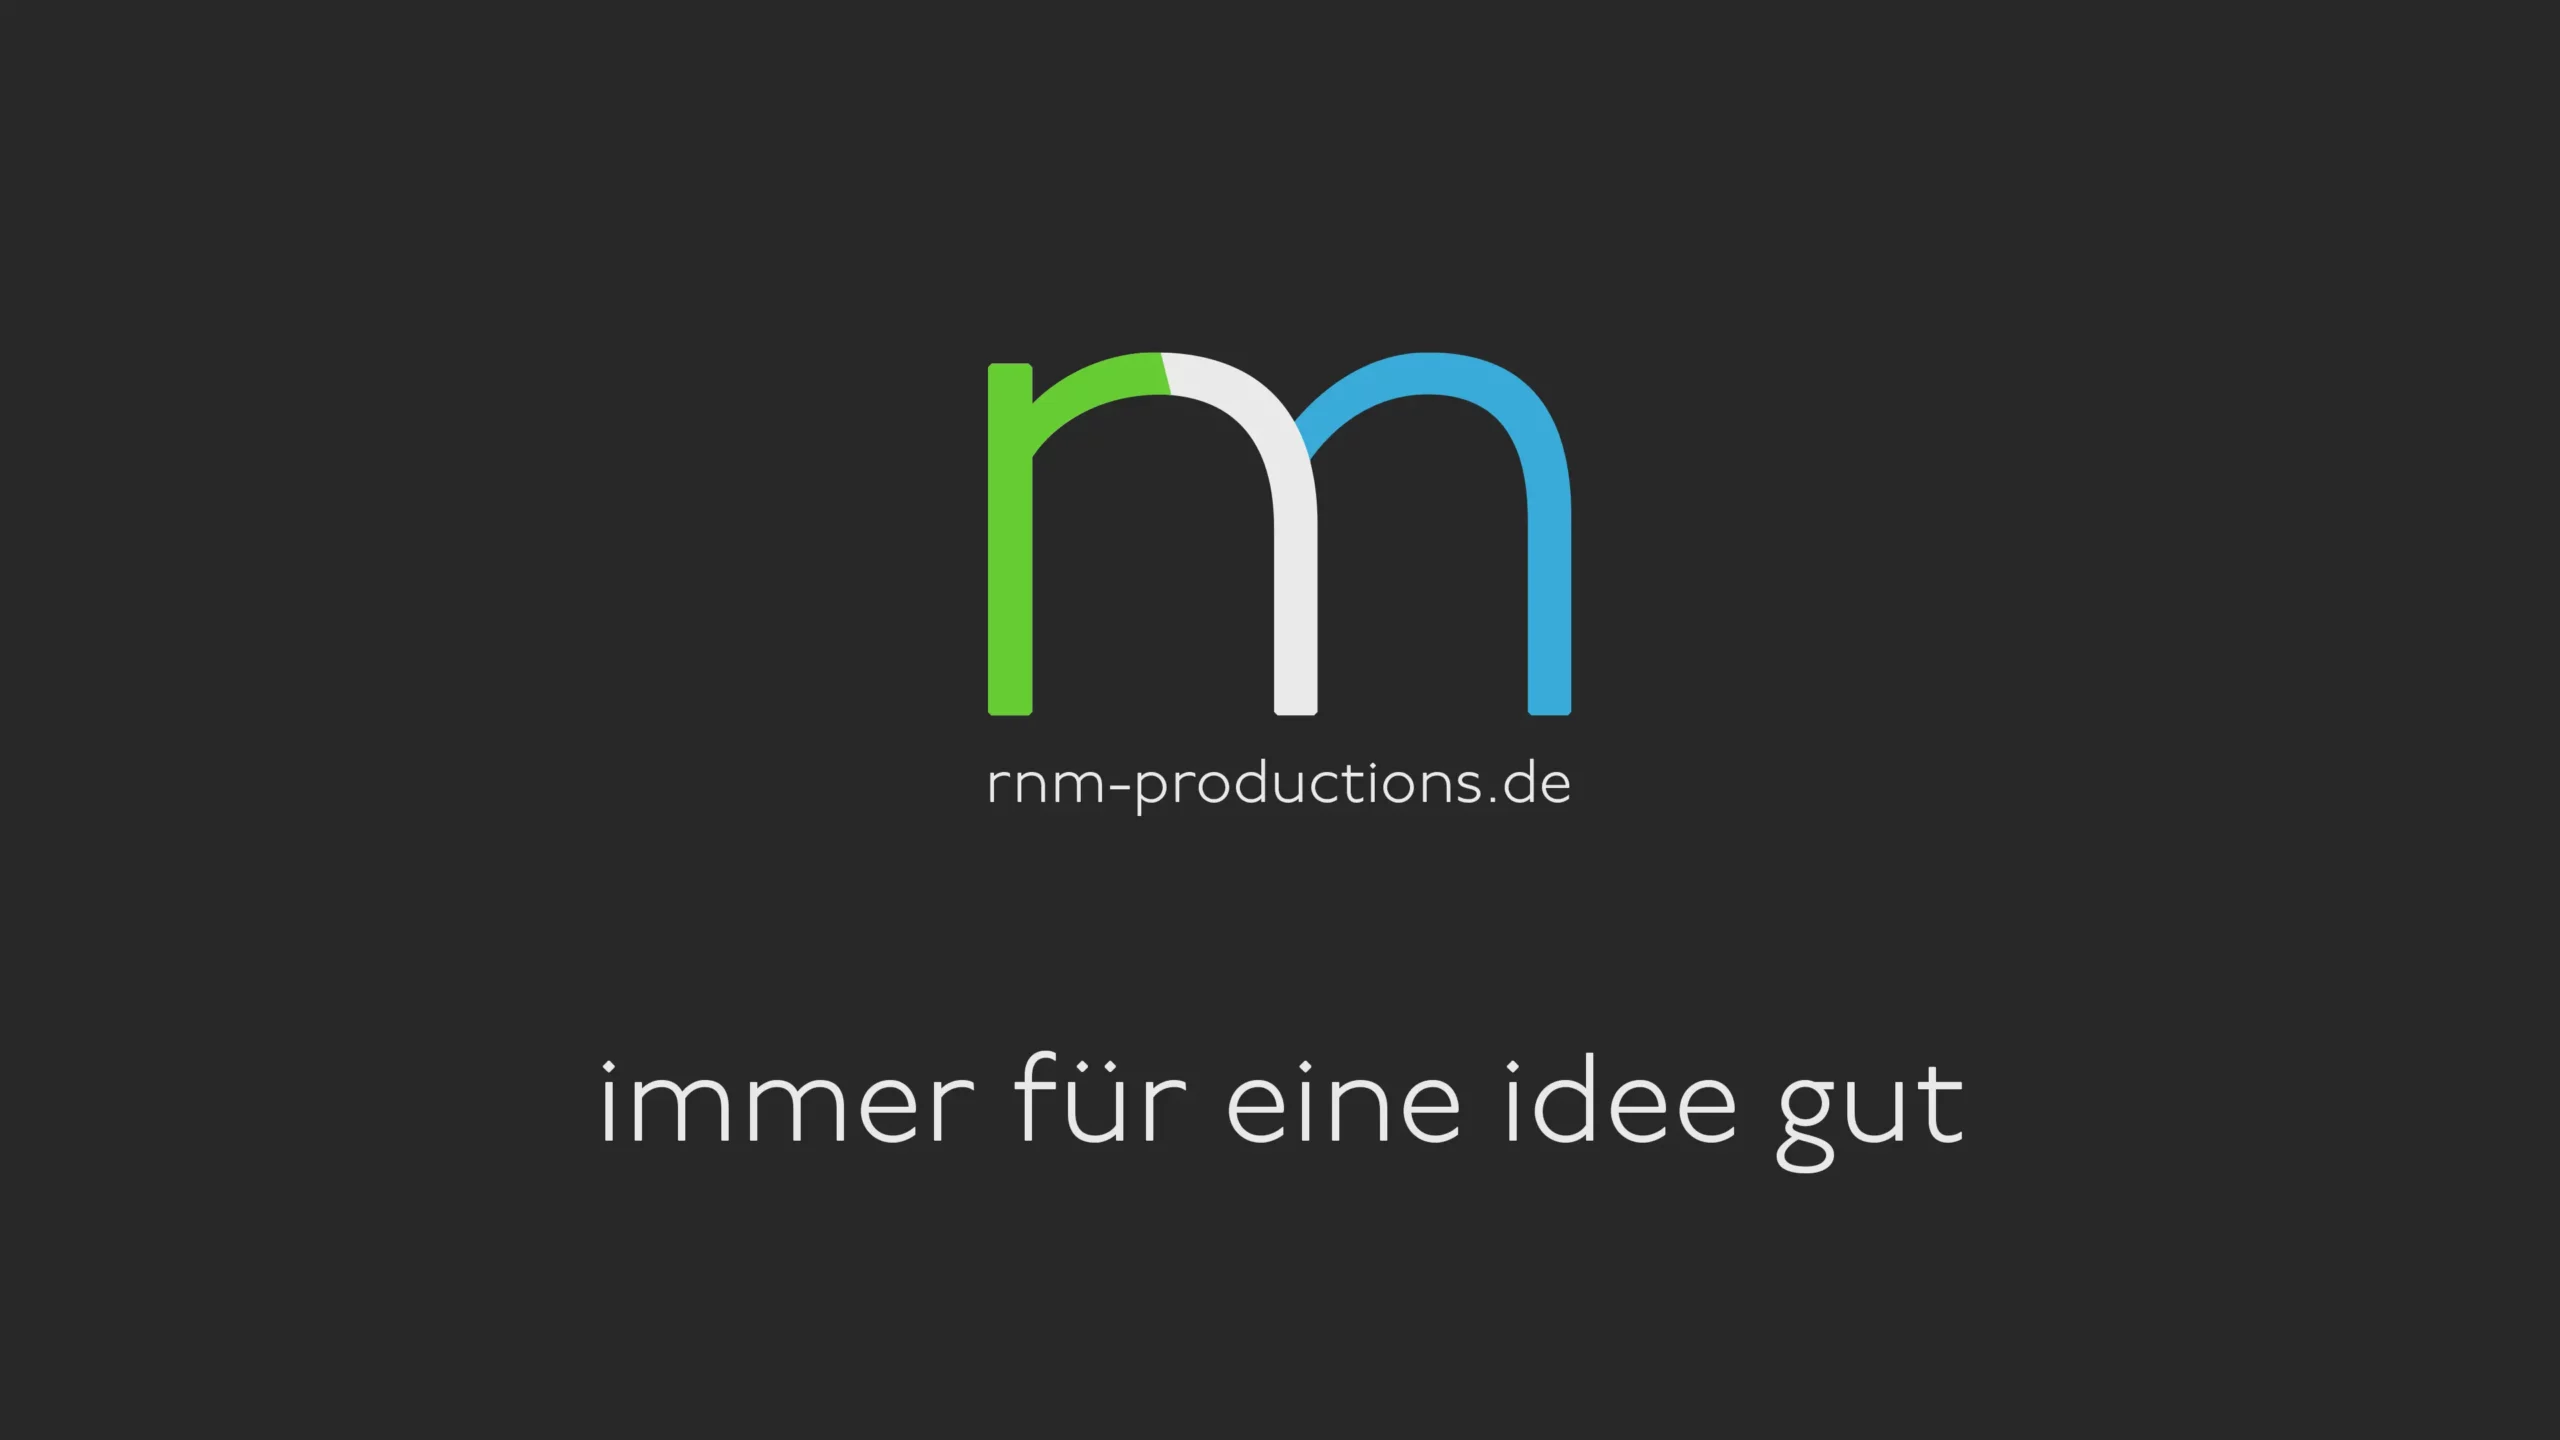 RNM - Logo und Titel - rnm-productions.de - Immer für eine Idee gut